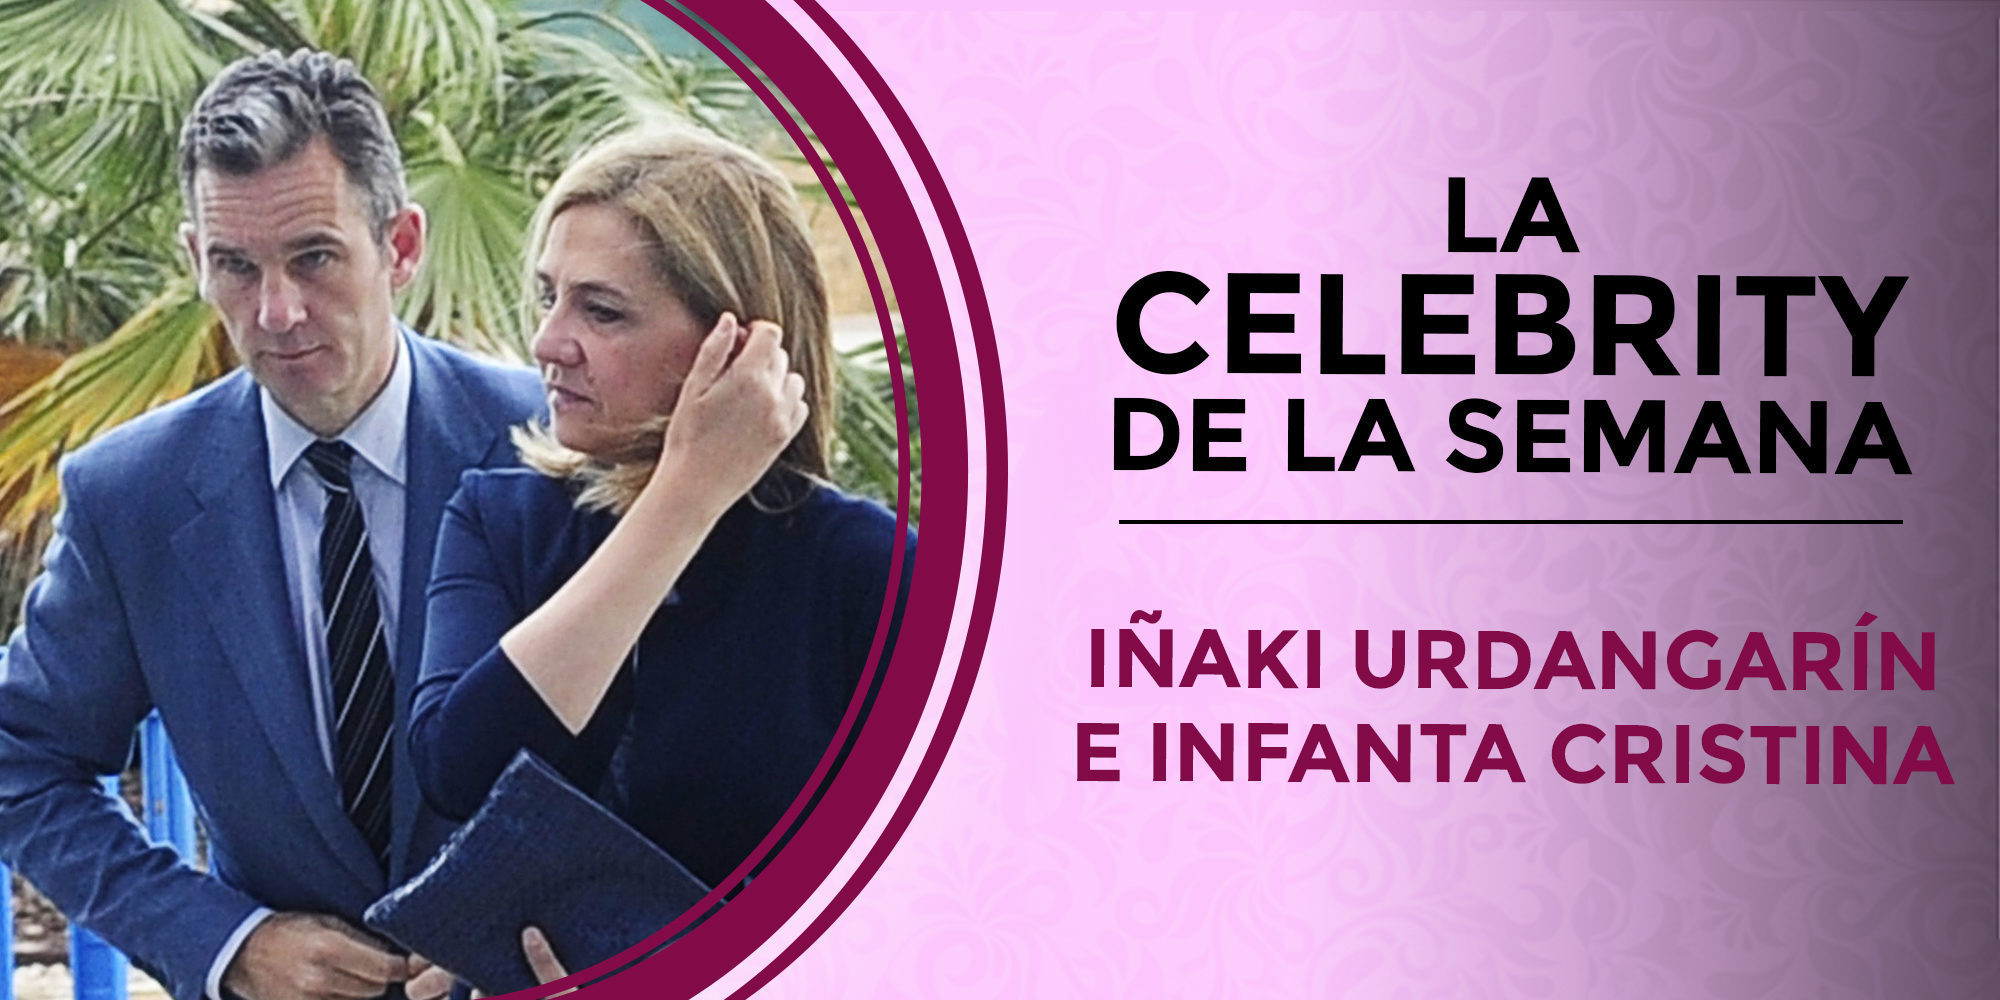 La sentencia de Nóos convierte a Iñaki Urdangarín y la Infanta Cristina en las celebrities de la semana